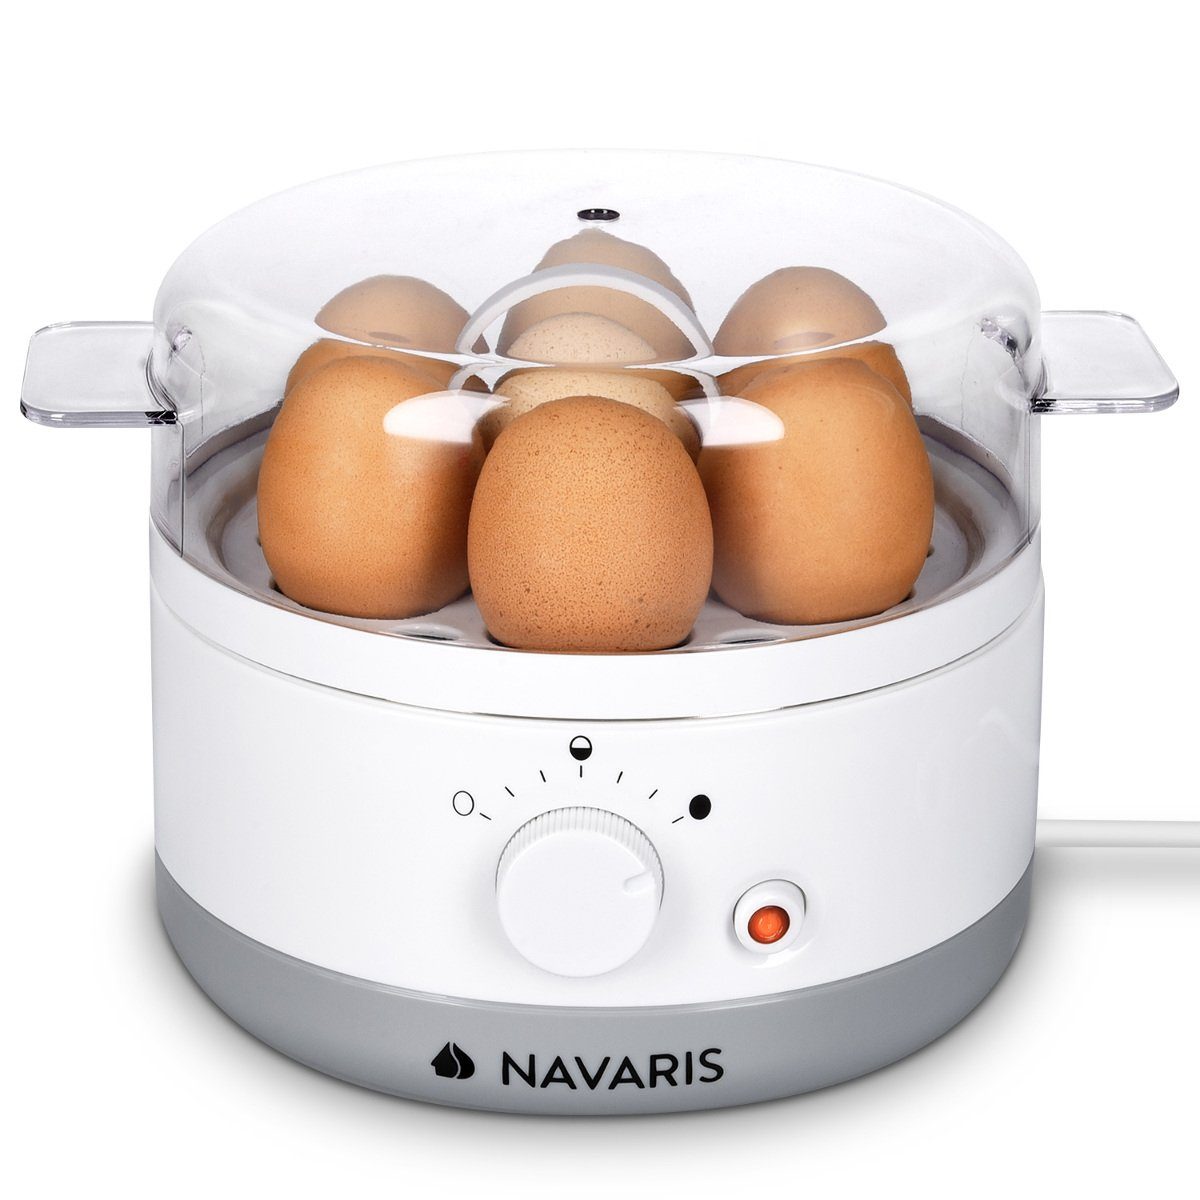 22x17,5cm - Eier Eierkocher für - einstellbar 1-7 Eierkocher - Navaris 350W